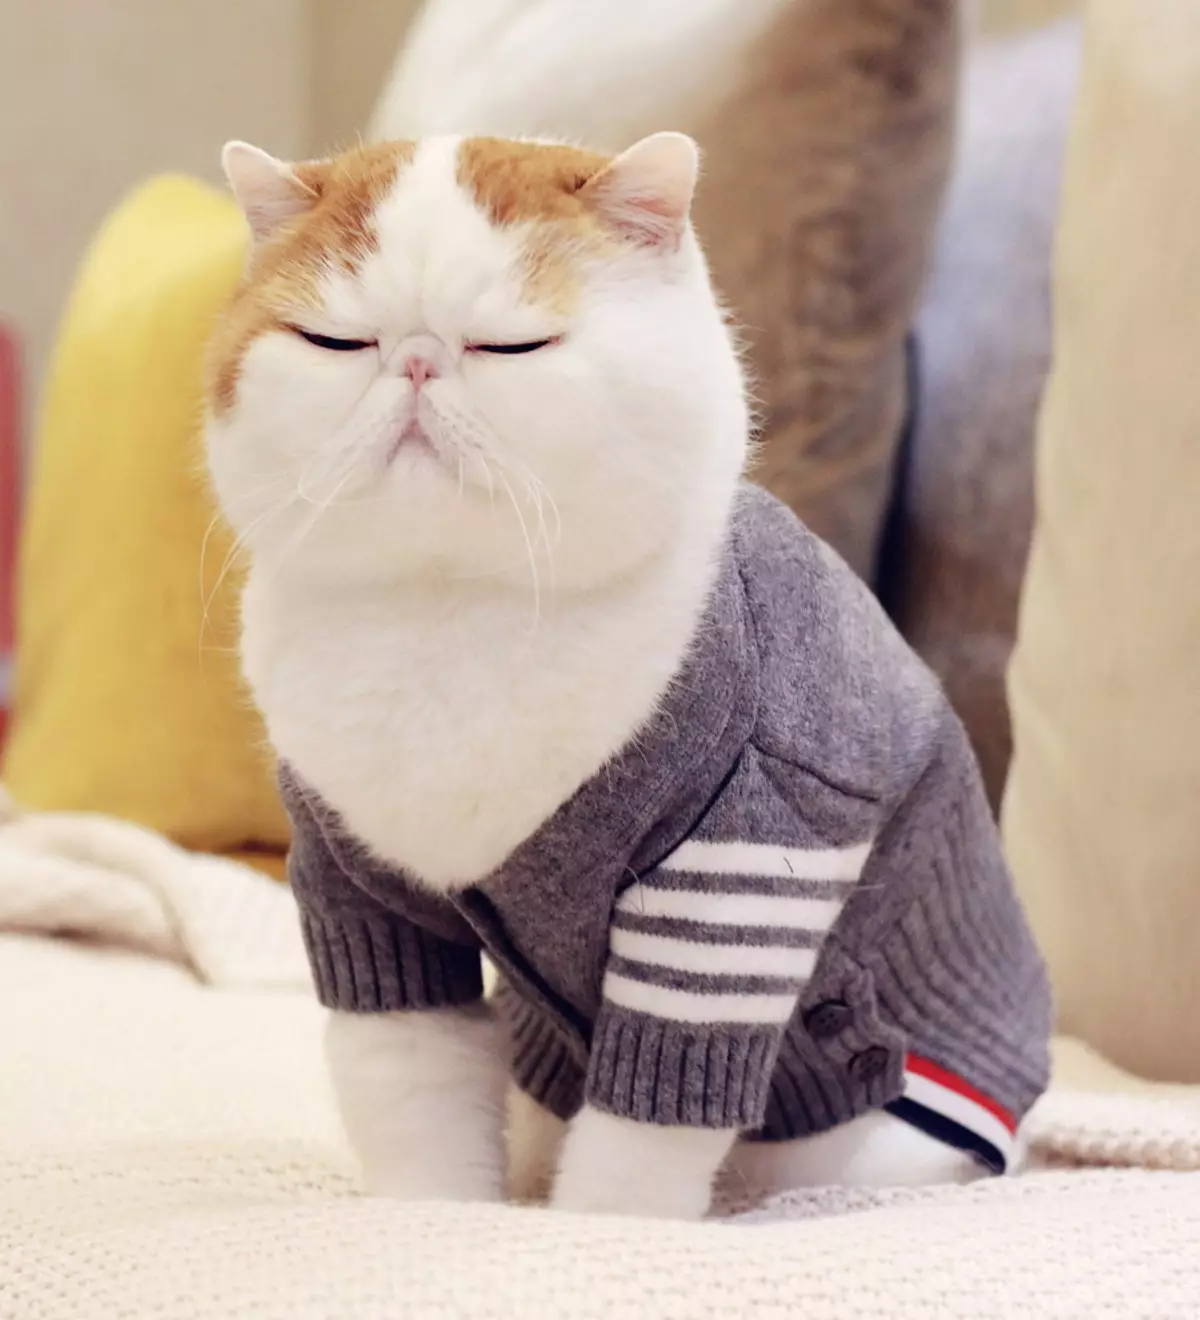 Snapy Cats (24 billeder): Hvorfor har kattene i denne race blive populær? Beskrivelse af naturen og funktionerne i indholdet af en eksotisk japansk kat 22529_5